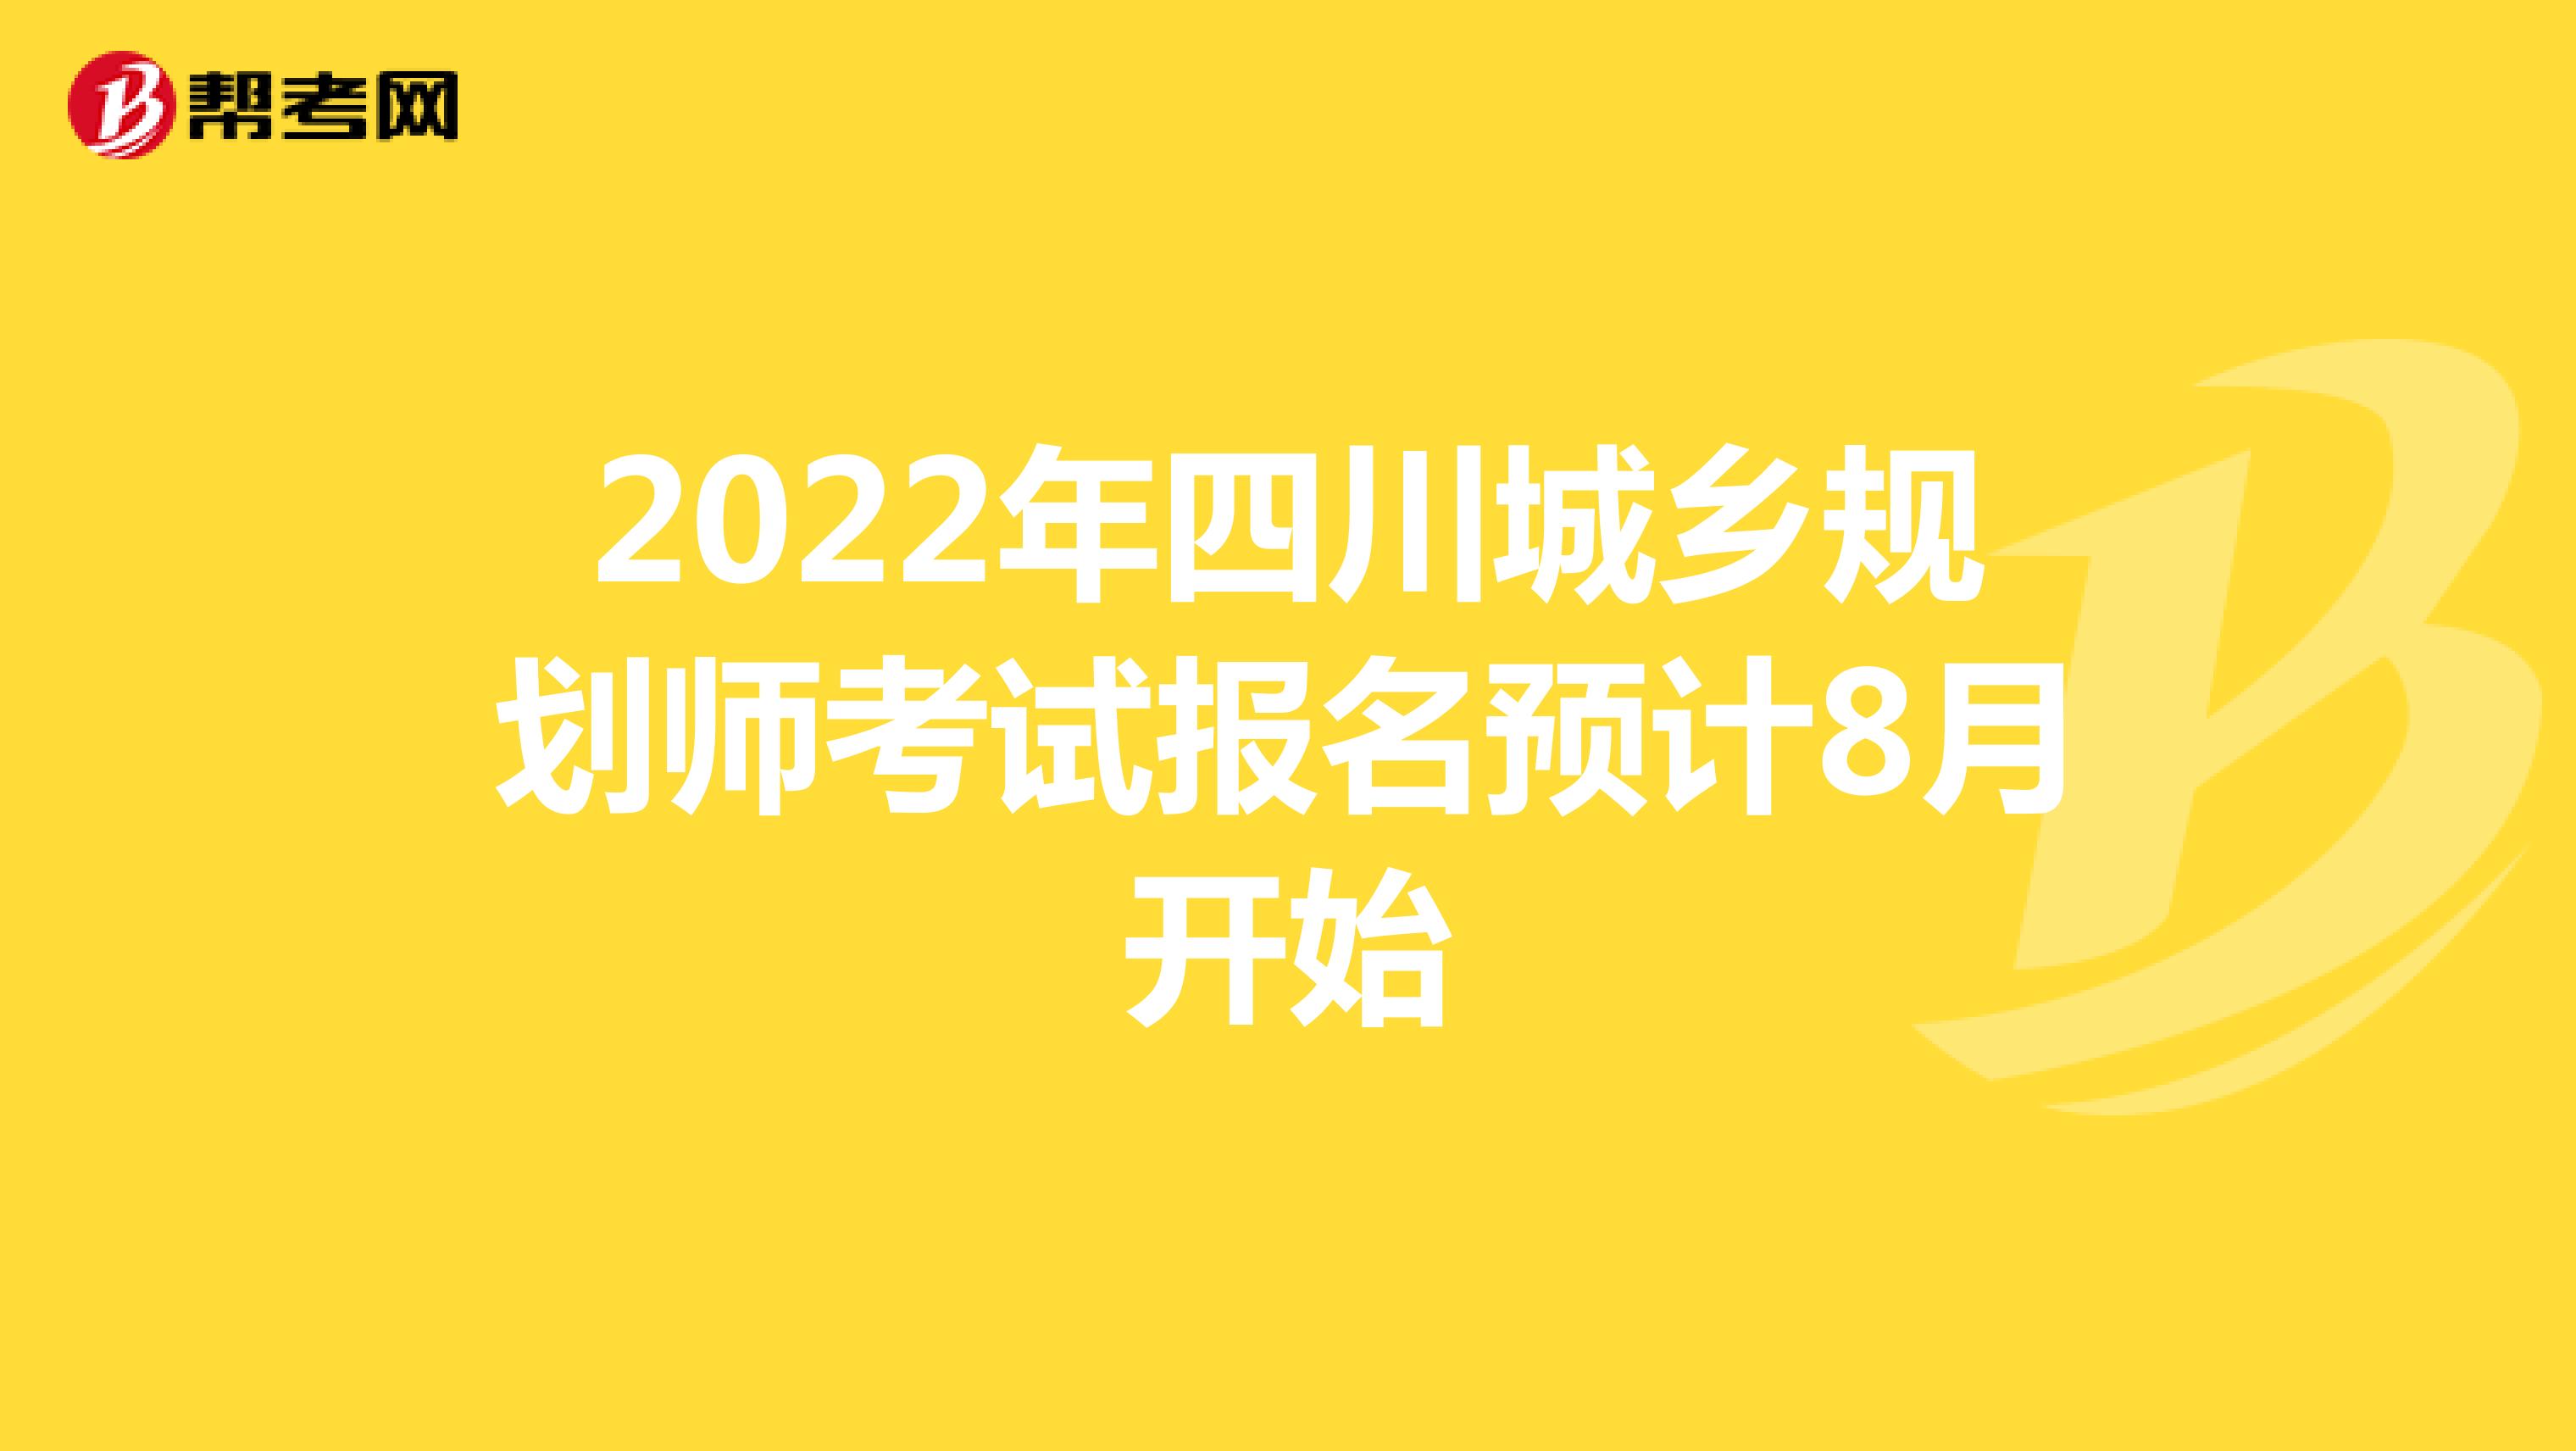 2022年四川城乡规划师考试报名预计8月开始